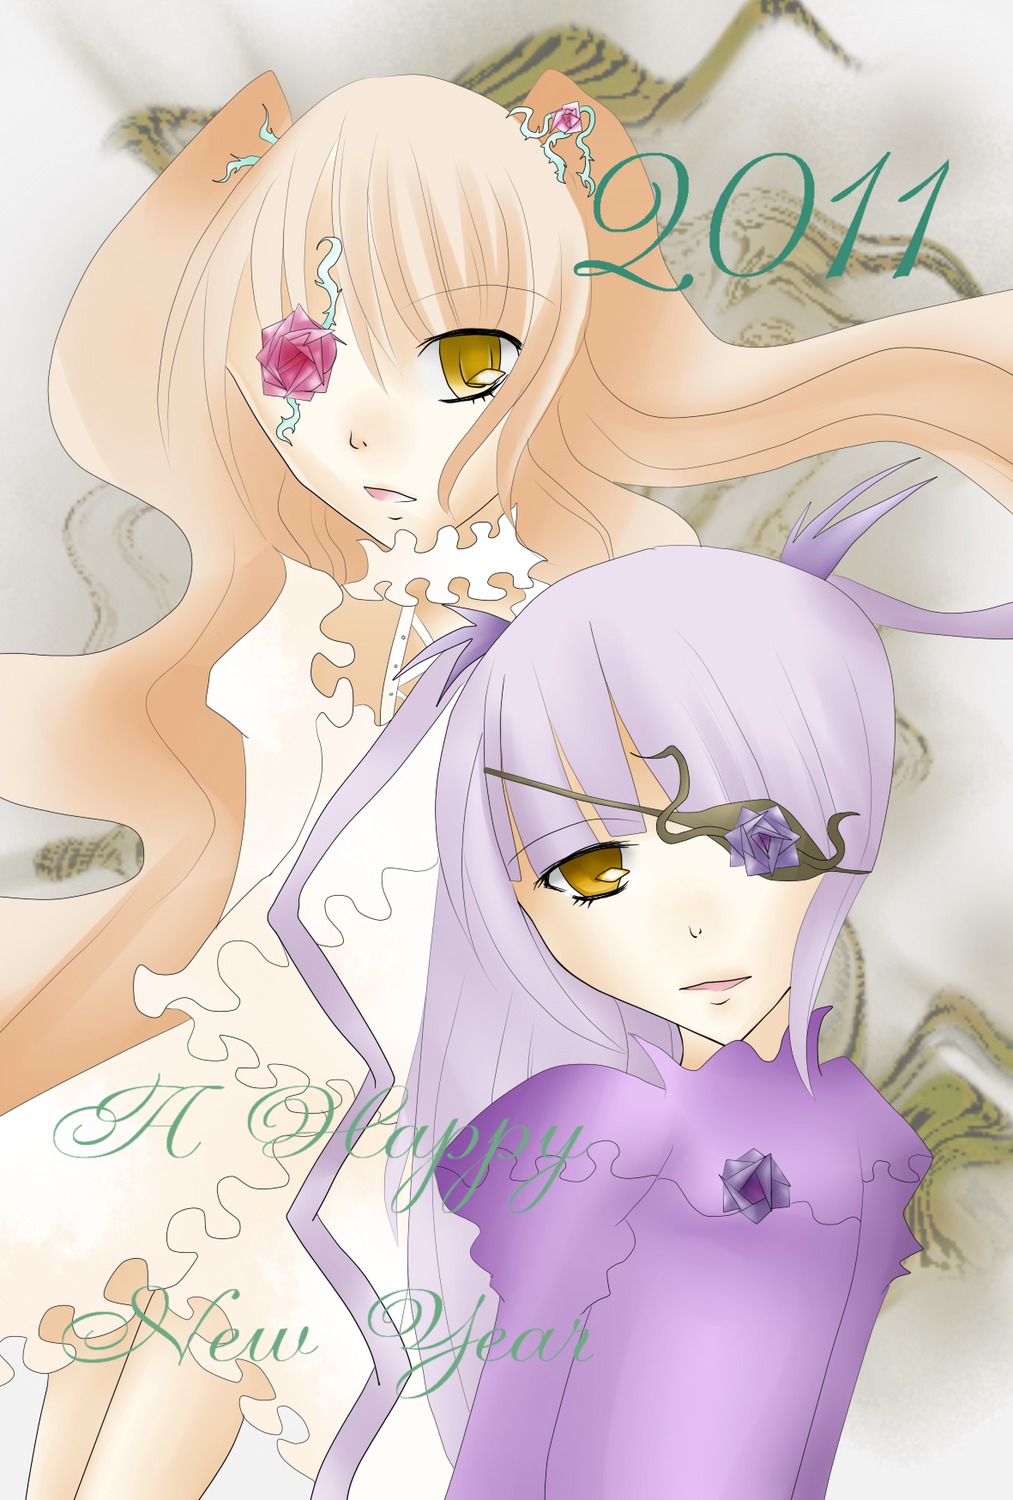 2girls barasuishou dress eyepatch flower image kirakishou long_hair multiple_girls pair purple_hair yellow_eyes